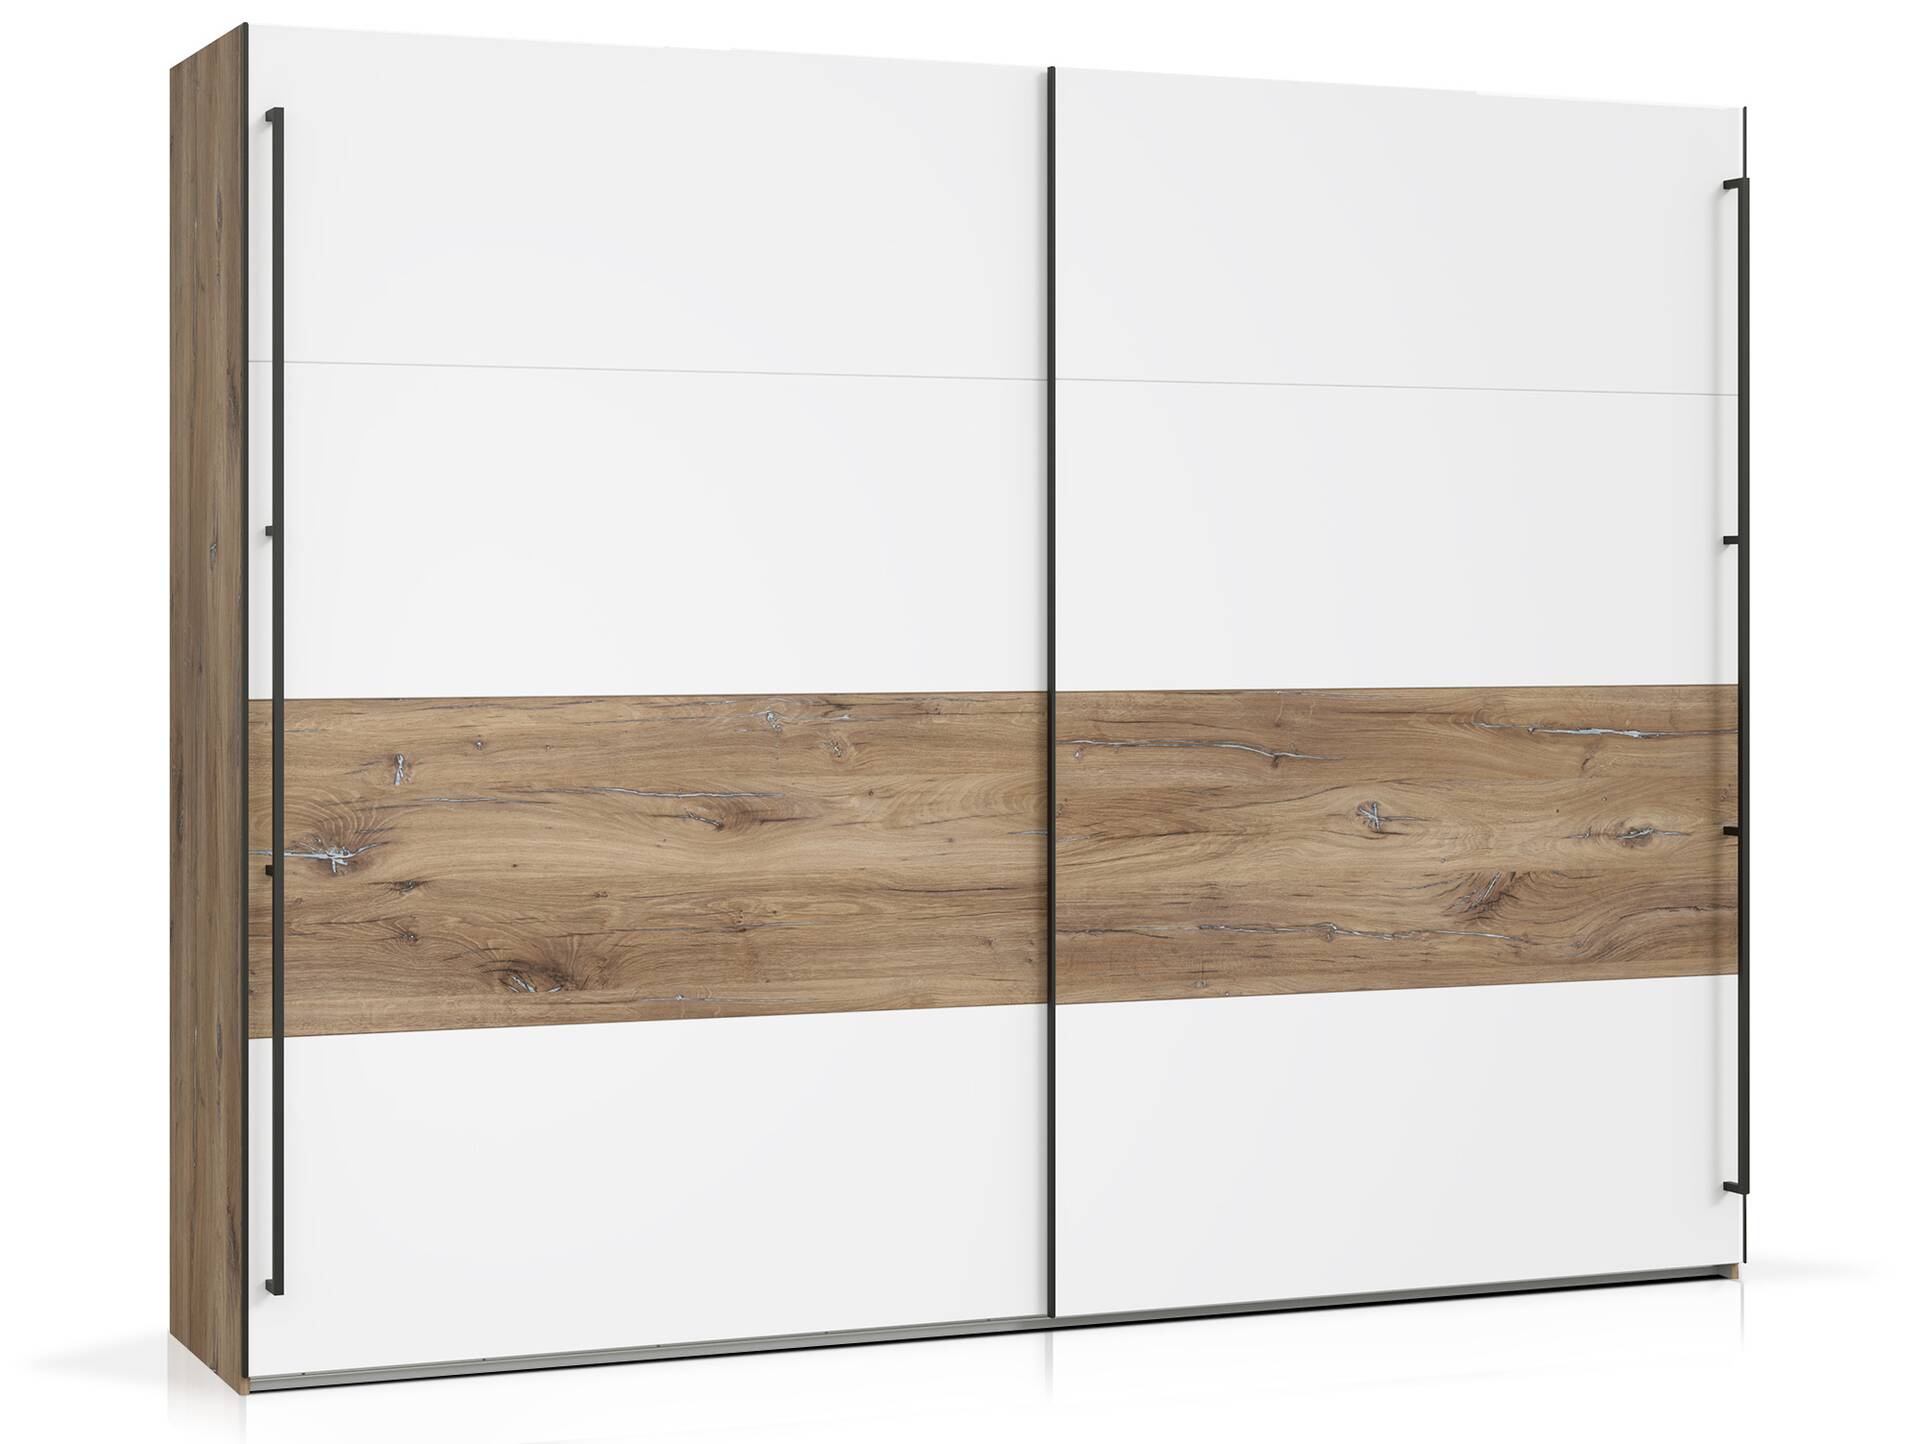 KACY Komplett Schlafzimmer, Material Dekorspanplatte, Flagstaff Eichefarbig/Weiß 270 cm